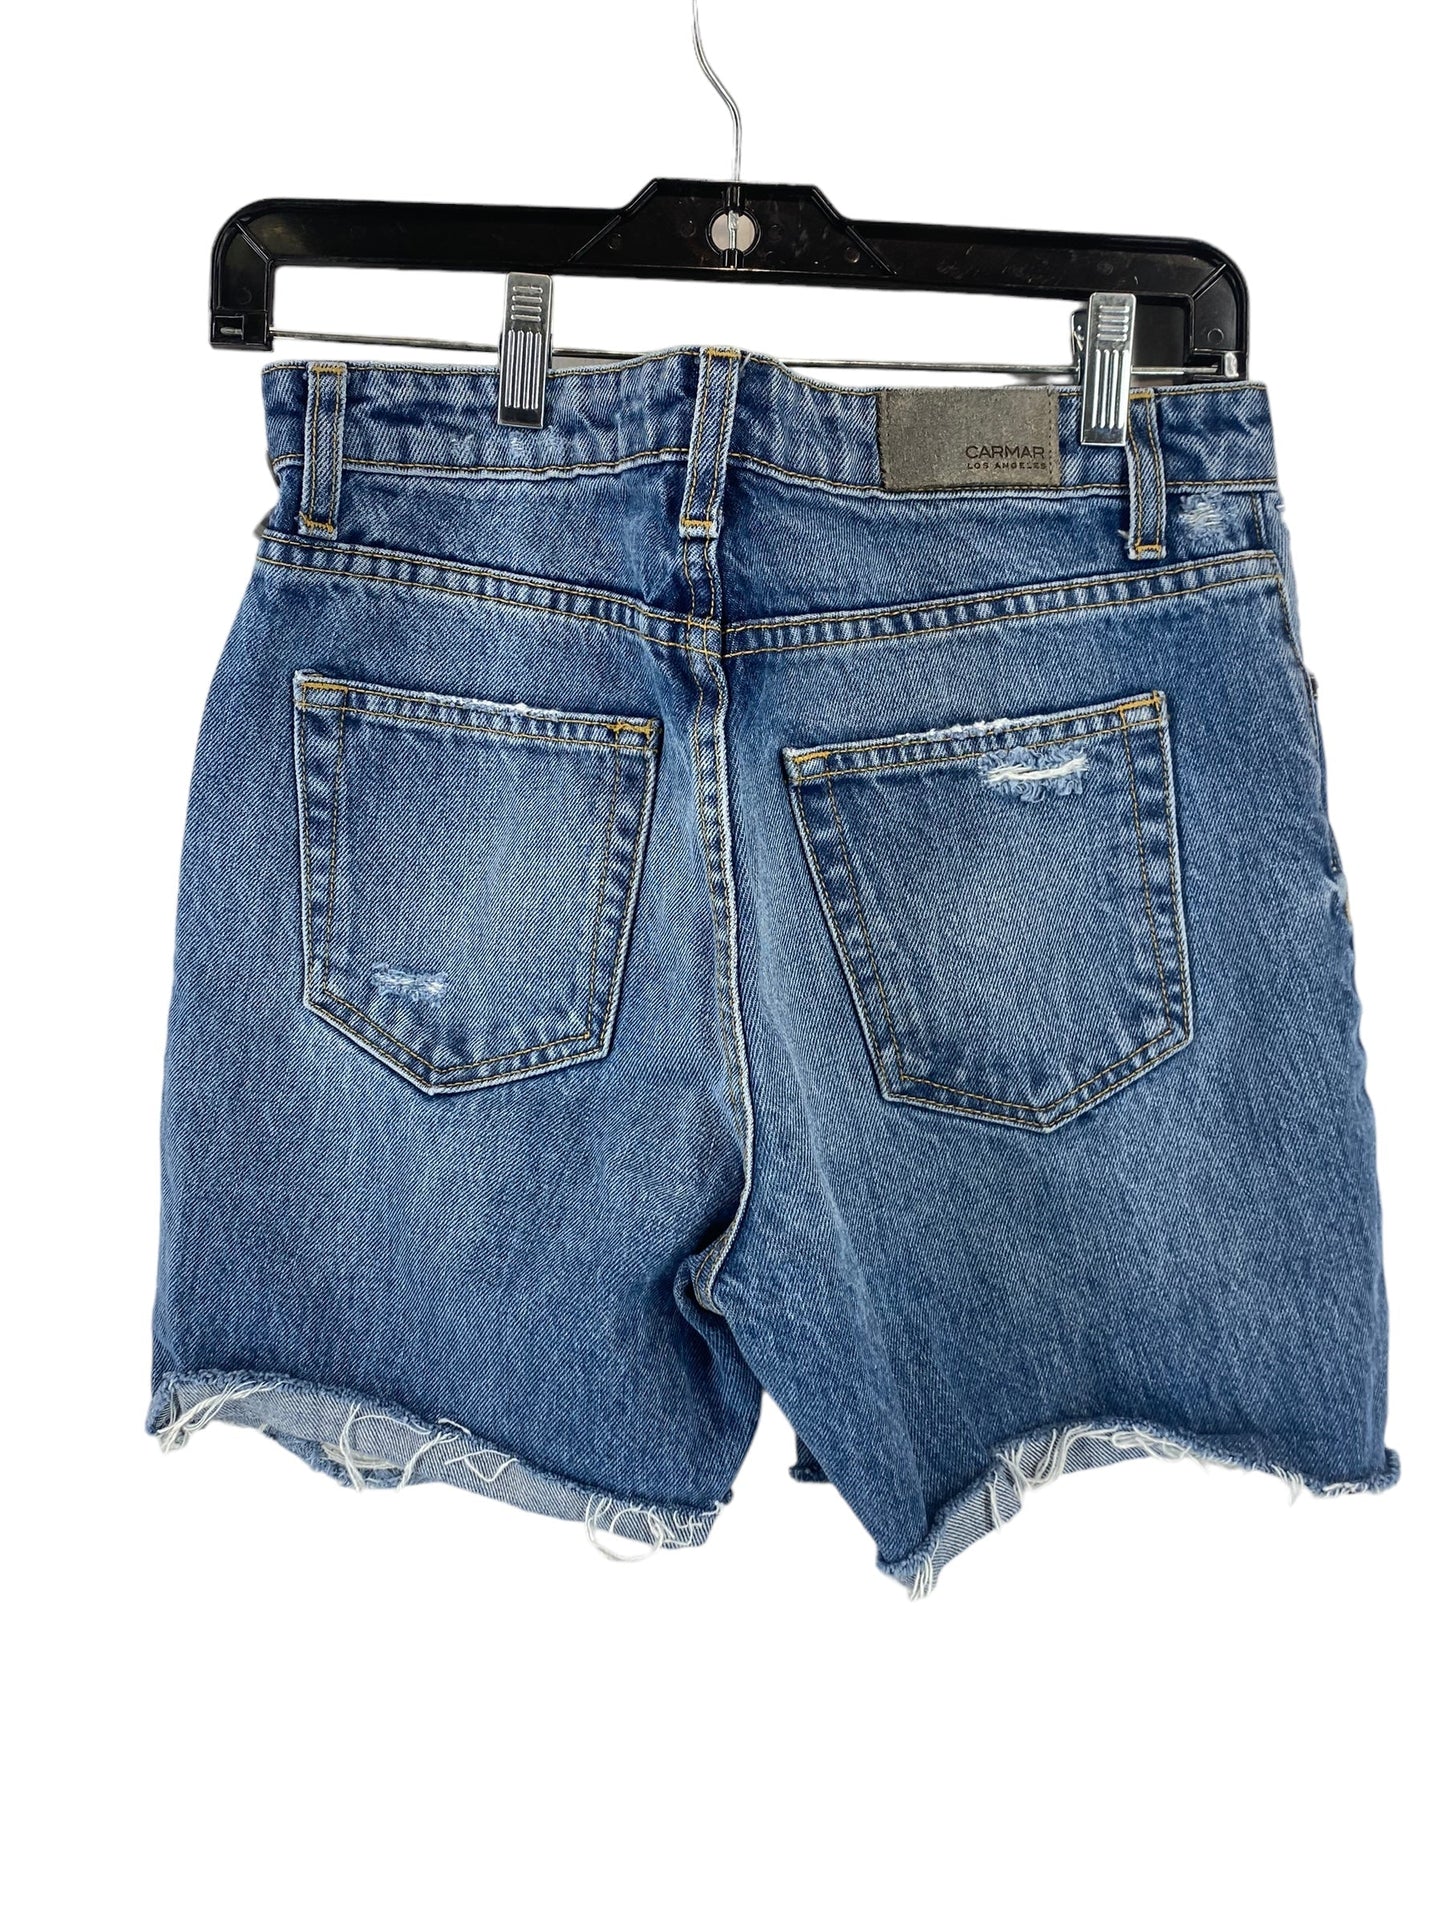 Blue Denim Shorts Clothes Mentor, Size 27